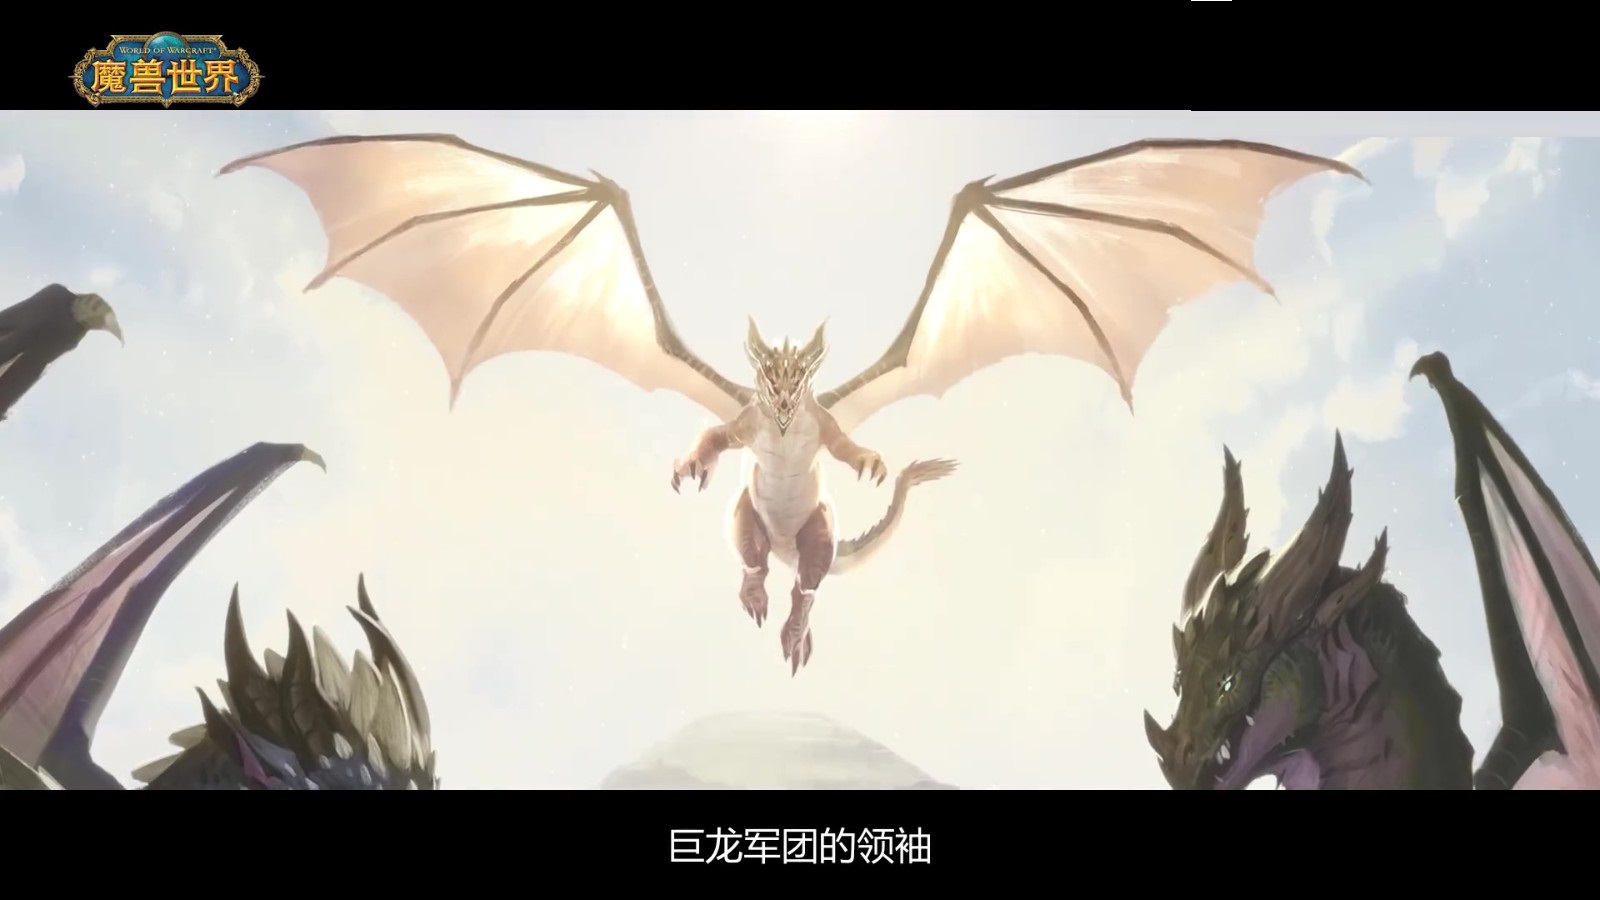 《魔兽世界》巨龙时代将于11月29日上线